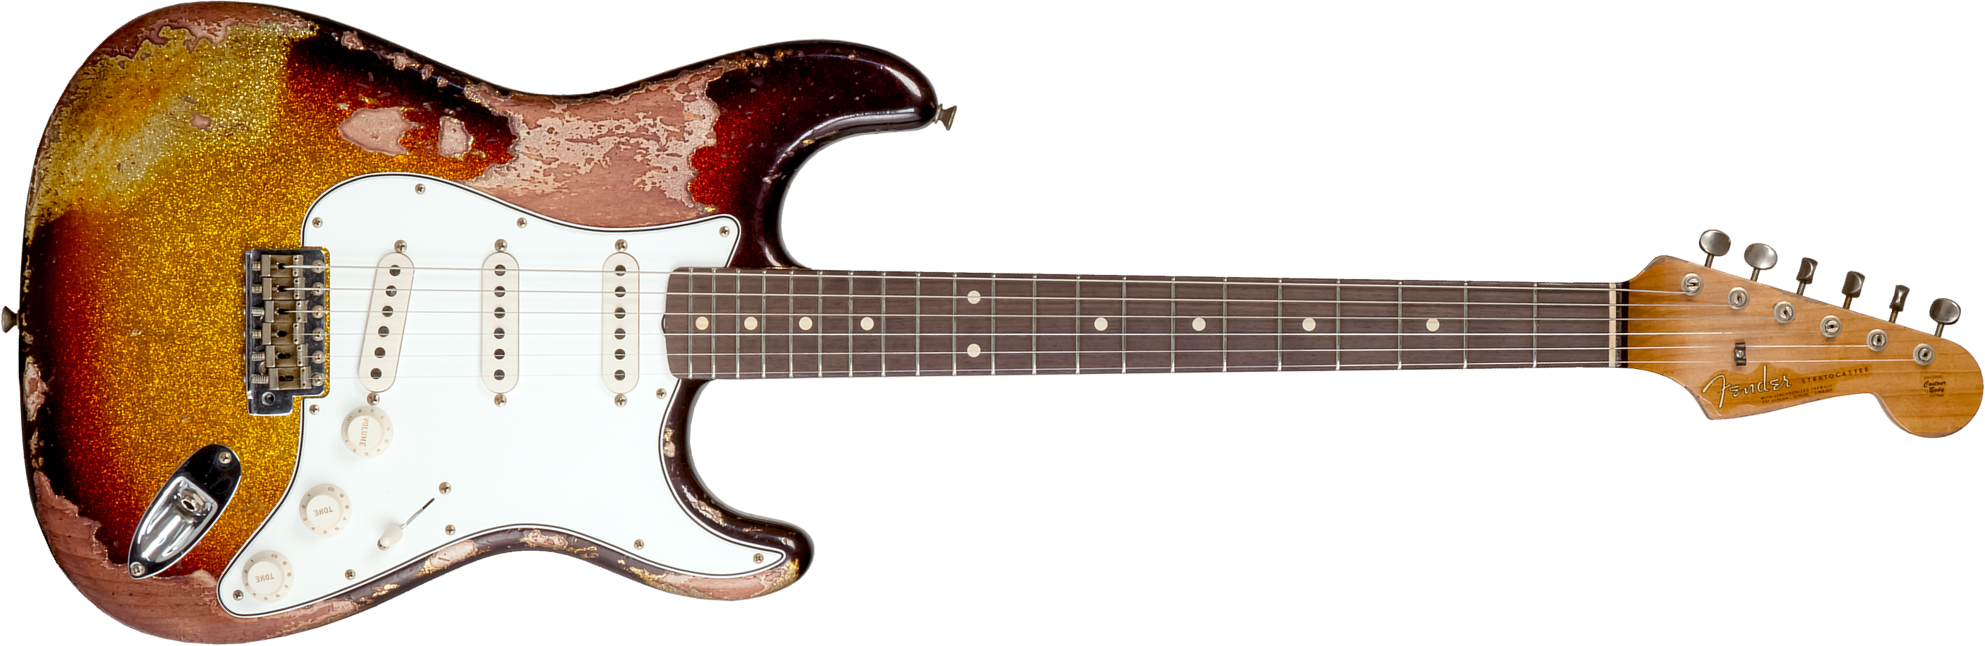 Fender Custom Shop Strat 1963 3s Trem Rw #r136169 - Super Heavy Relic Sparkle 3-color Sunburst - Str shape electric guitar - Main picture